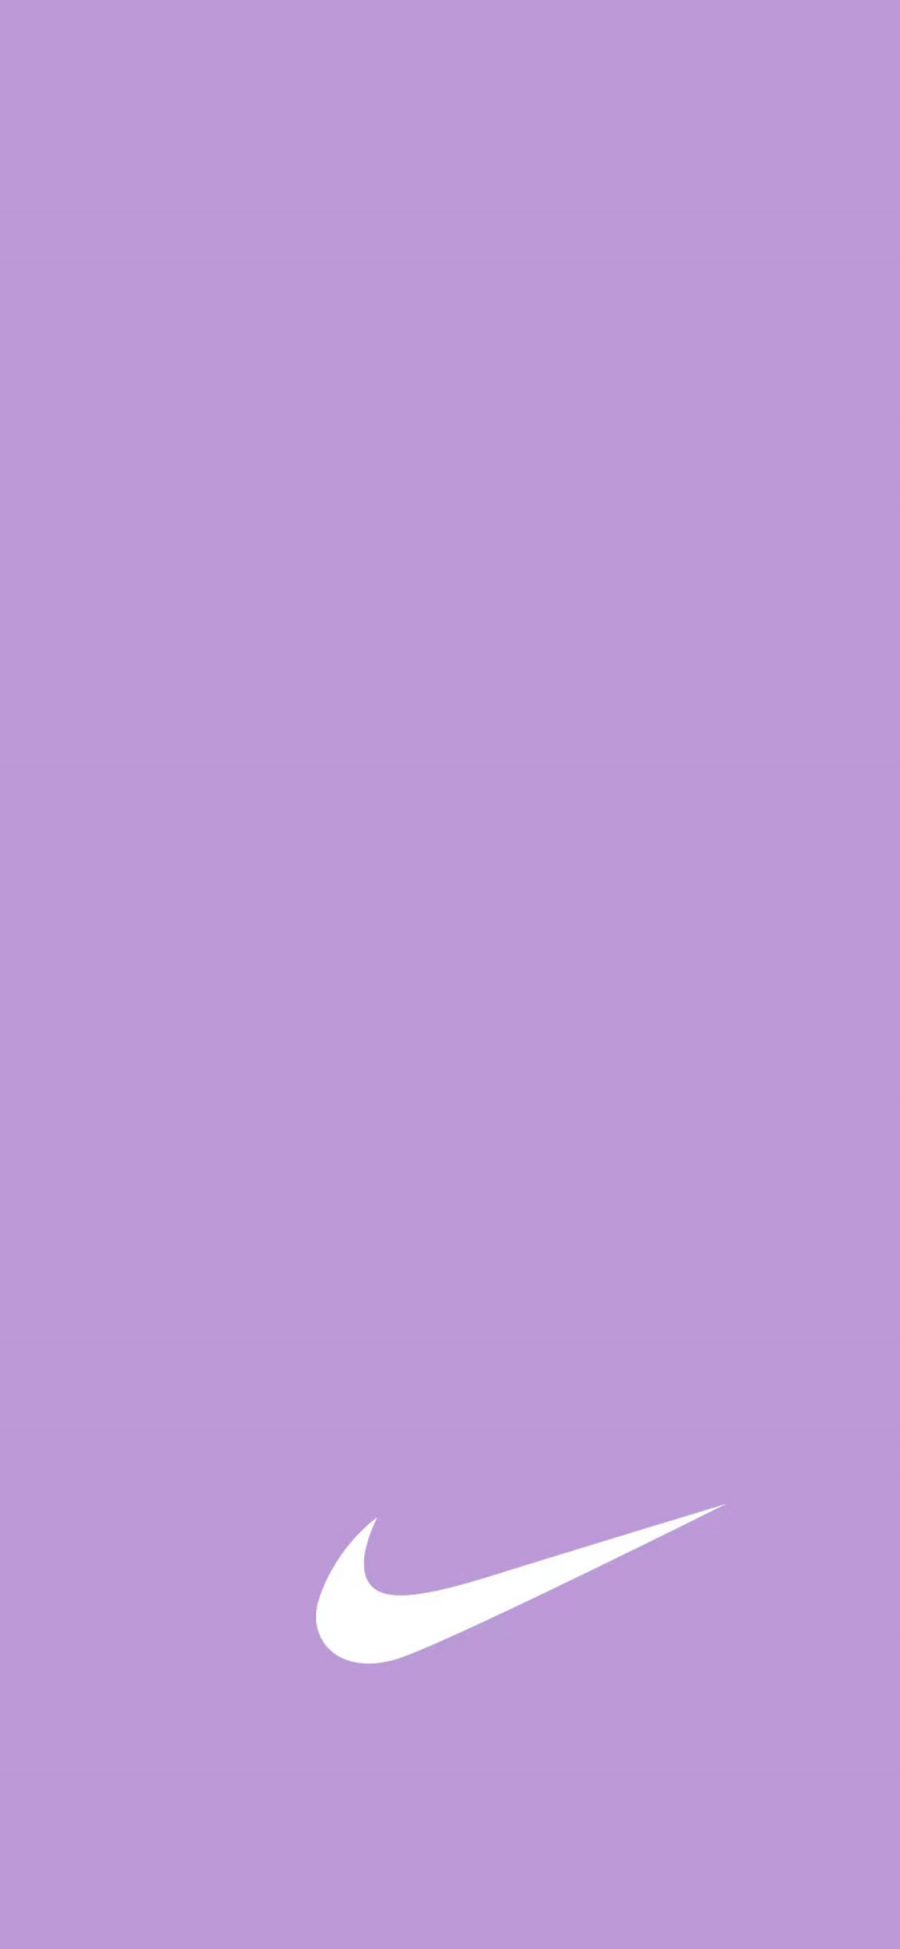 2436 1125 纯色紫色背景nike Logo 苹果手机动漫壁纸图片 全面屏手机壁纸